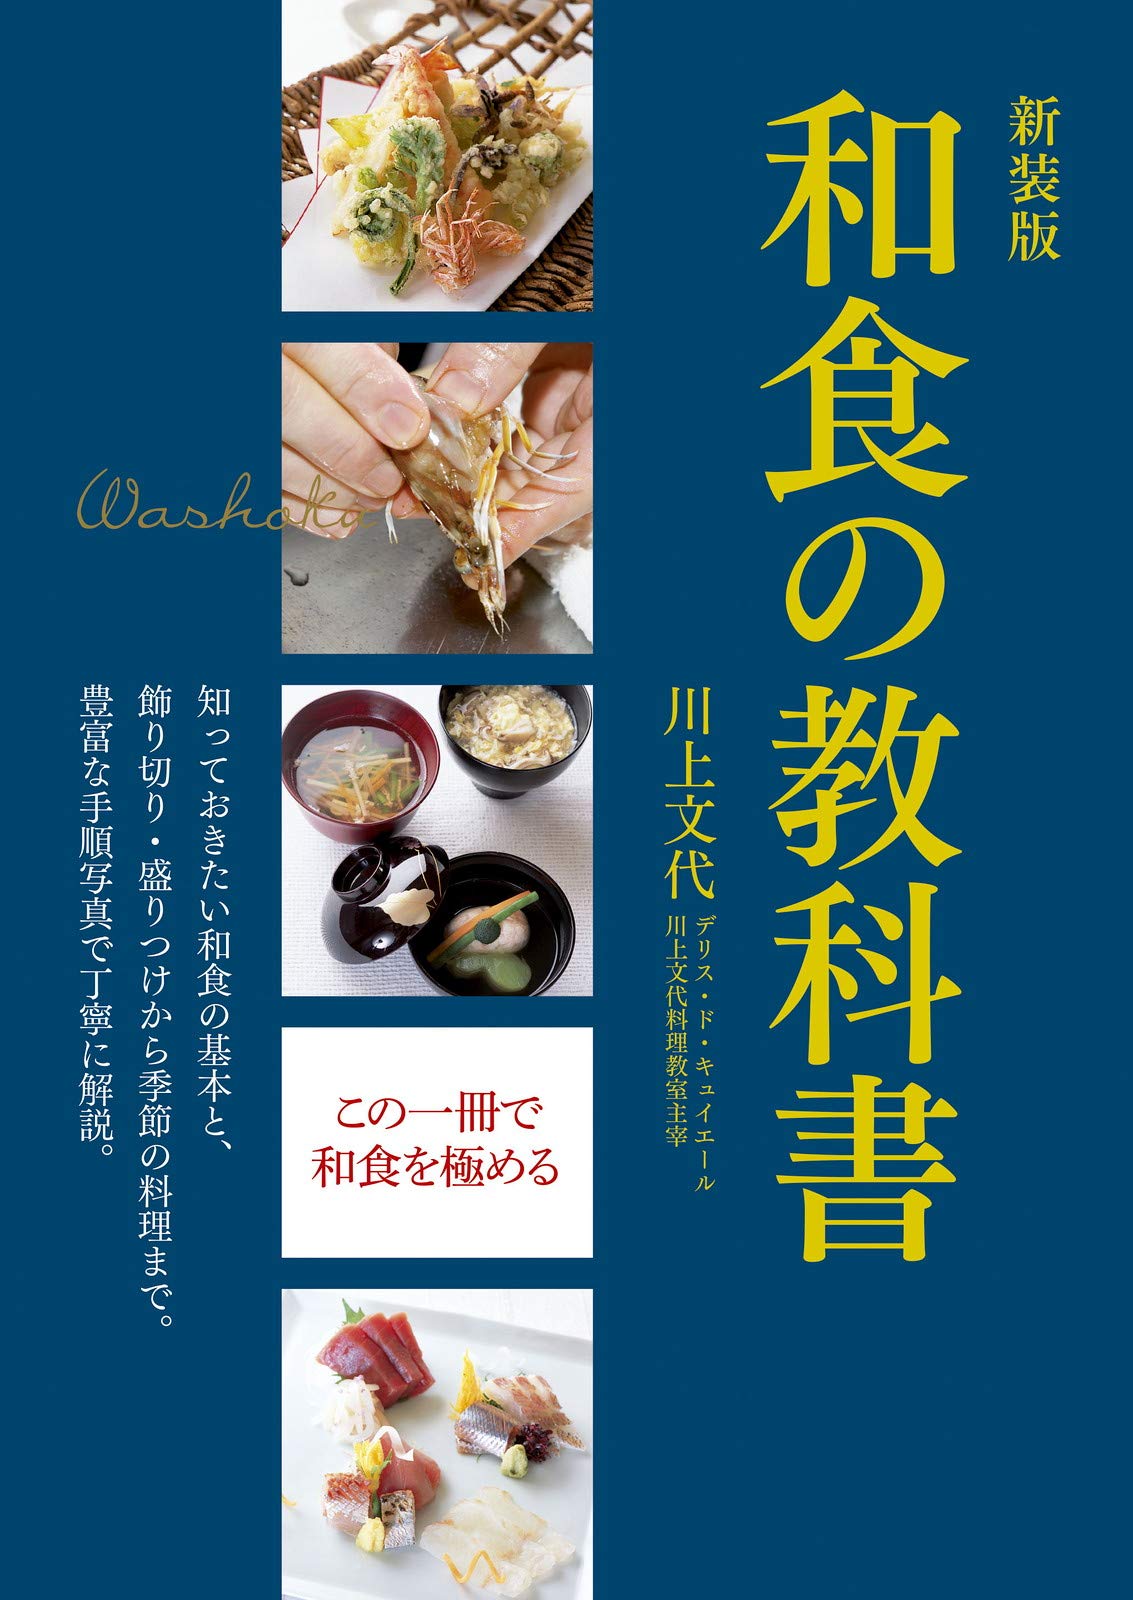 実践日本料理 盛宴 四季彩菜 和食 レシピ 全3冊 定価88000円 - 住まい 